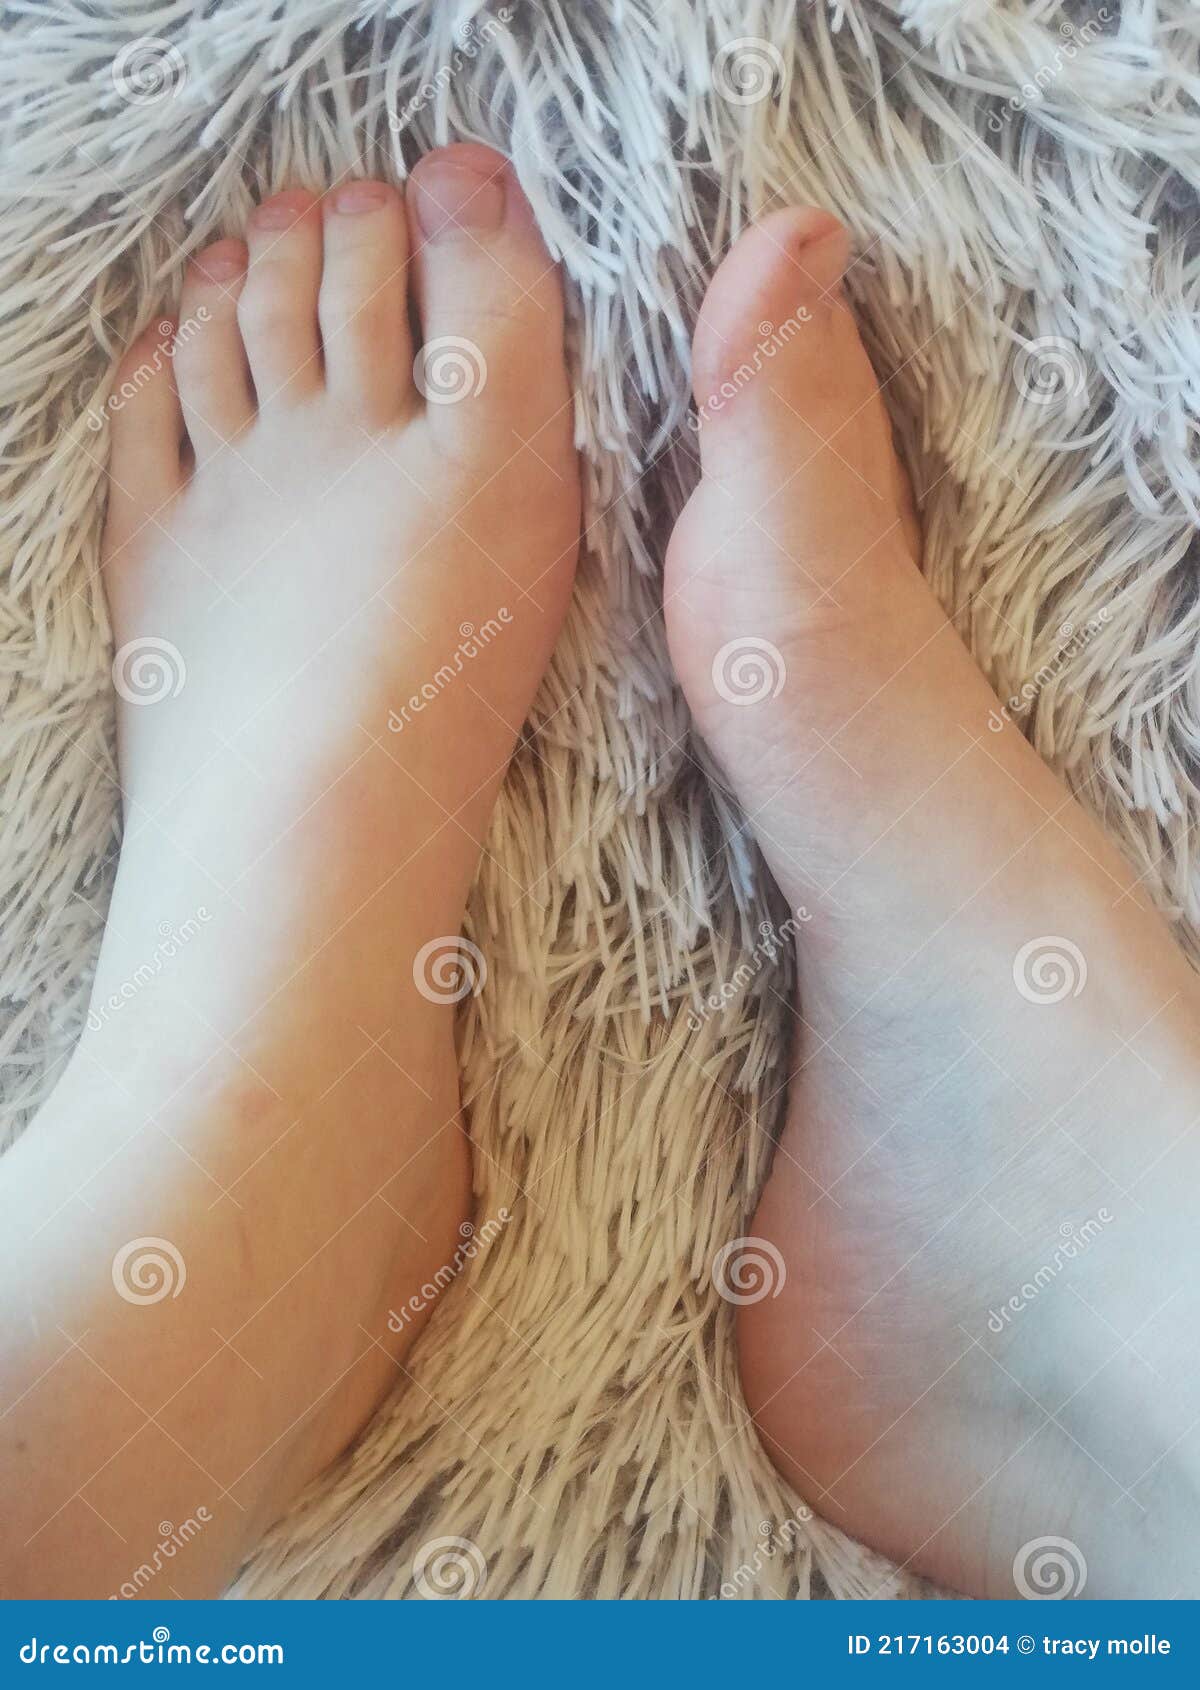 Bbw feet chubby Feet •